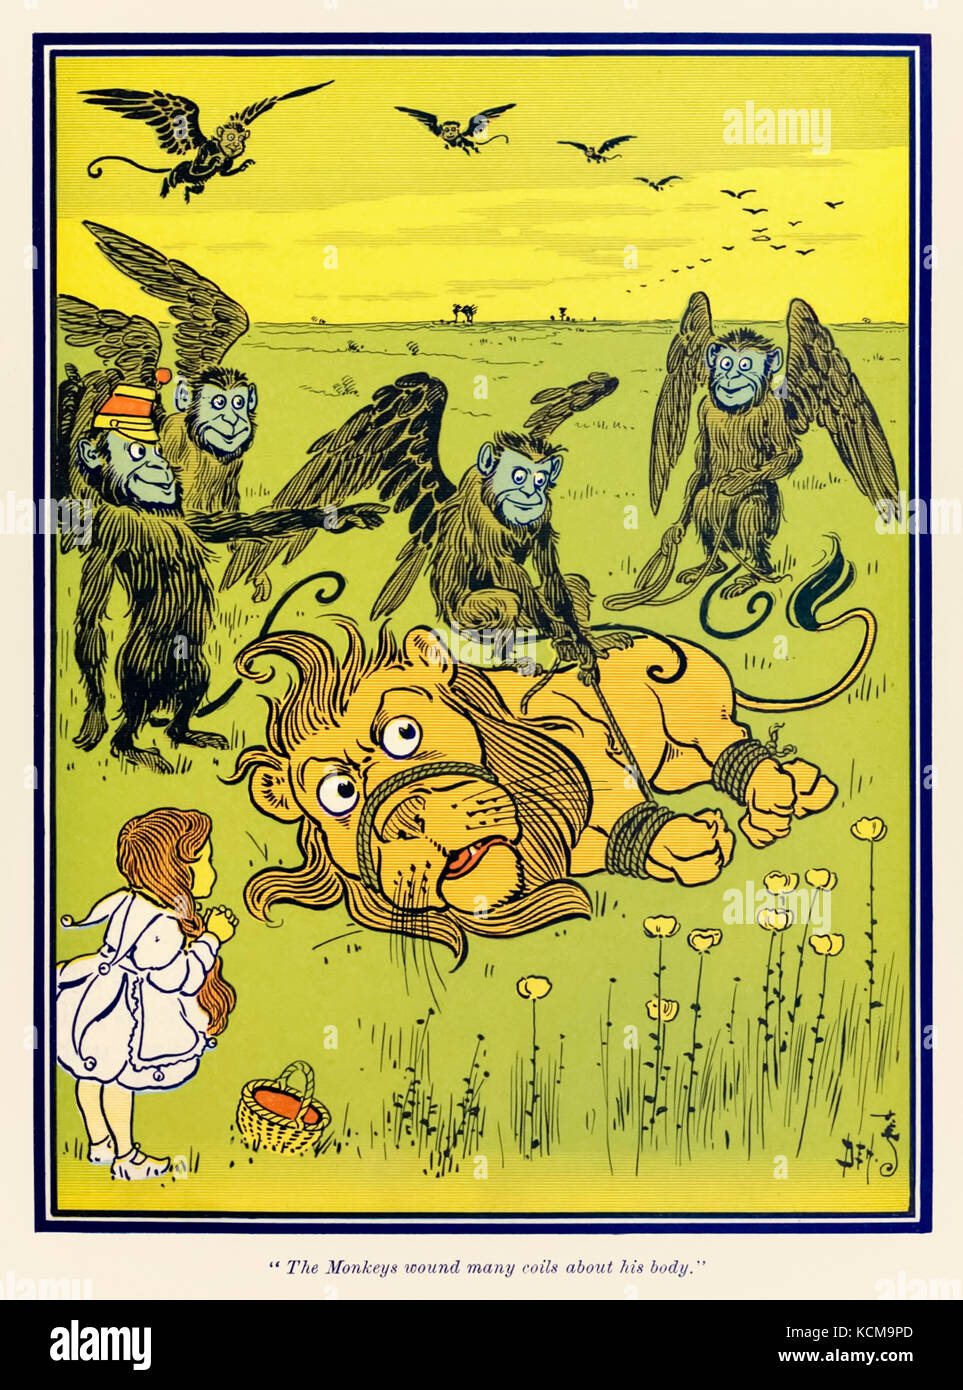 "Le Scimmie avvolta molte spire intorno al suo corpo." da "Wonderful Wizard of Oz' da L. Frank Baum (1856-1919) con foto da W. W. Denslow (1856-1915). Vedere ulteriori informazioni qui di seguito. Foto Stock